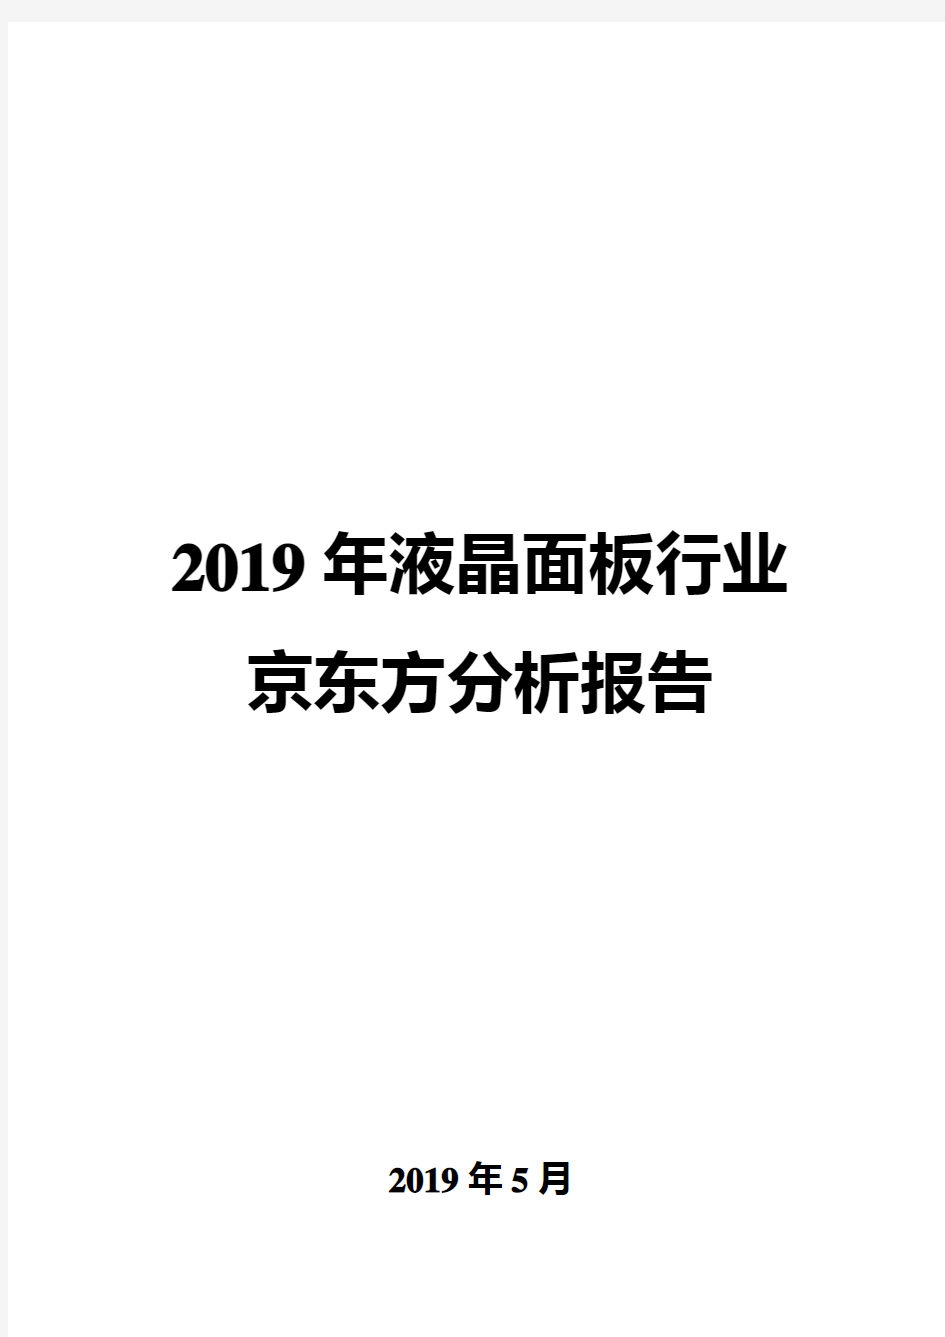 2019年液晶面板行业京东方分析报告